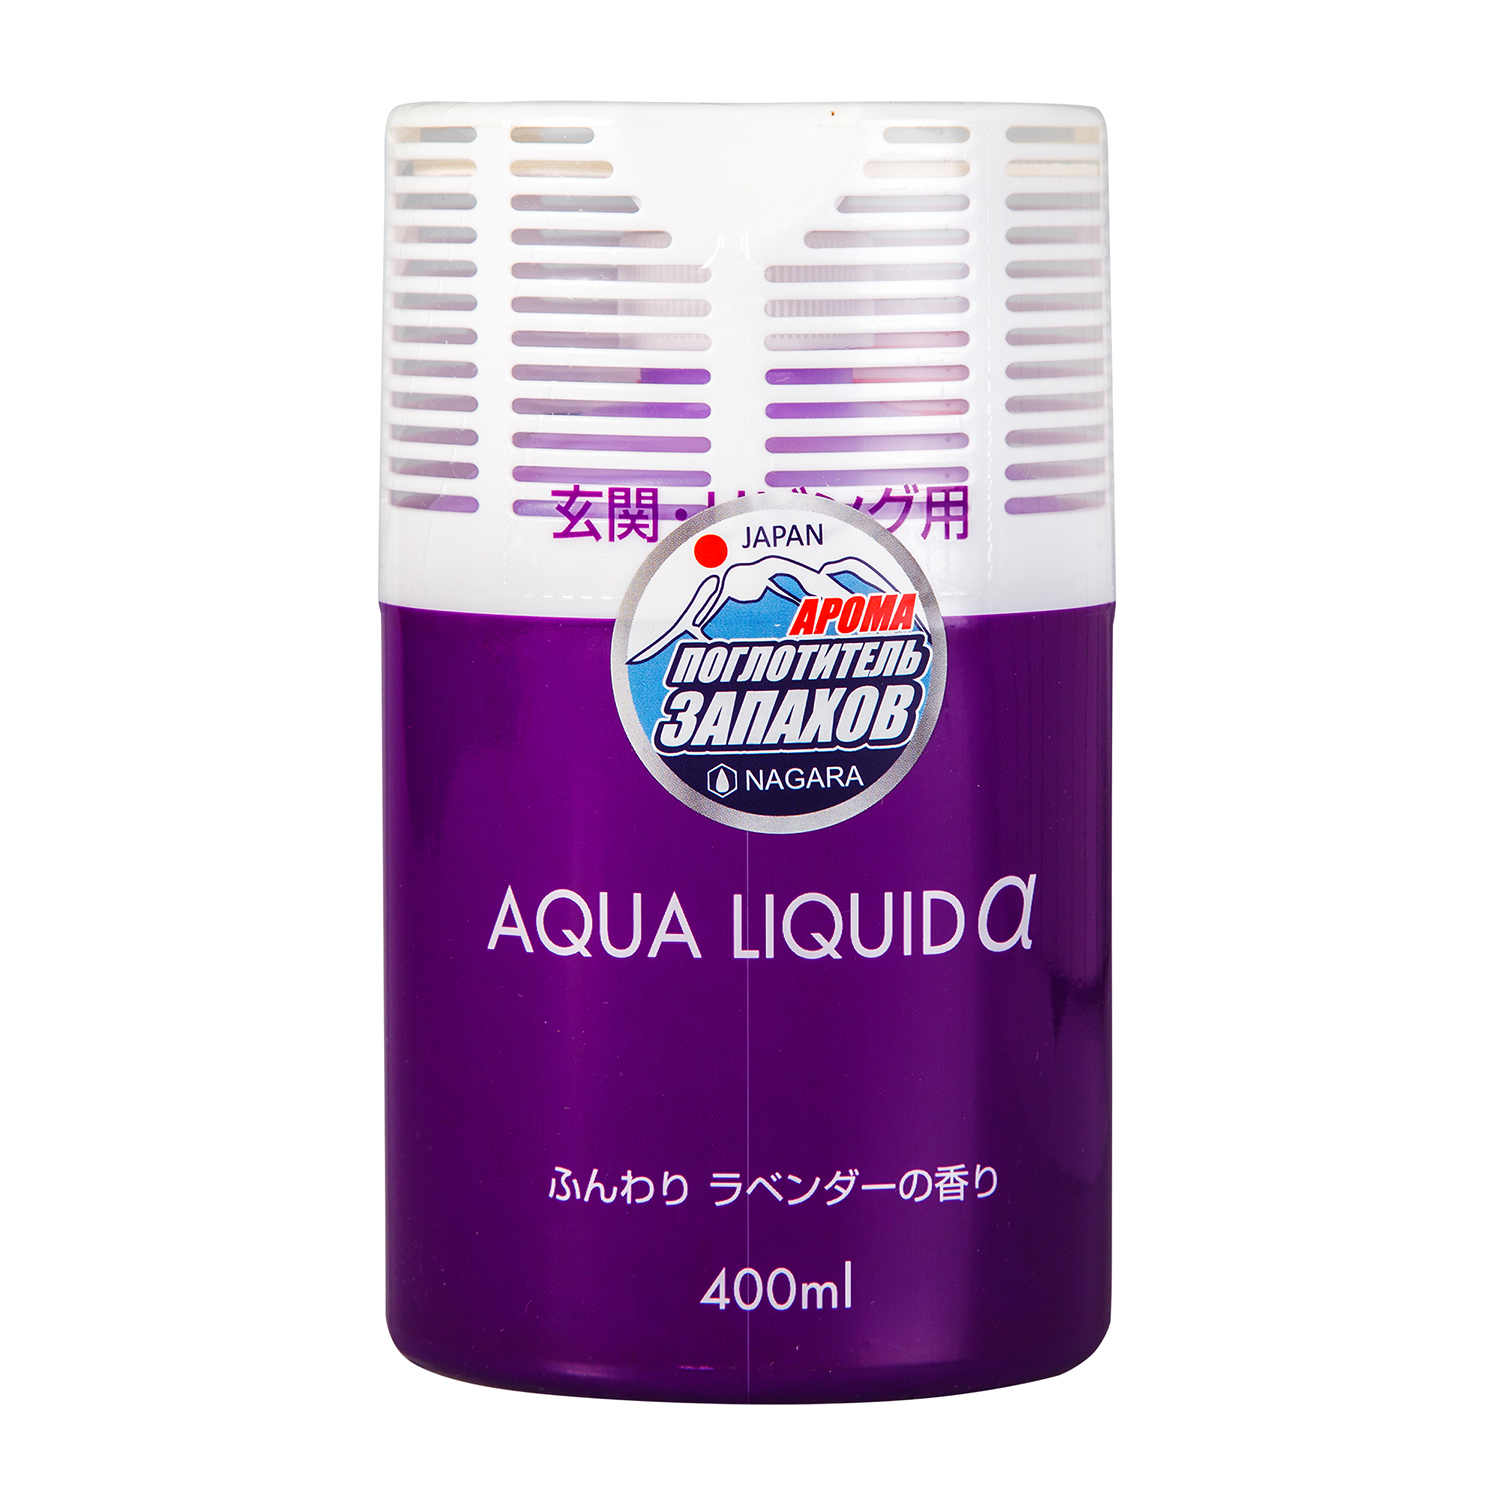 Дезодорирующие компоненты освежителя Nagara "Aqua liquid" предназначены для коридоров и жилых помещений легко и быстро распространяются по всему пространству помещения, активизируются при наличии в воздухе неприятных запахов, обволакивают и нейтрализуют их.   Особенности освежитель воздуха Nagara "Aqua liquid":  обладает нежным ароматом лаванды;  имеет простой дизайн, подходящий для любой комнаты;  безопасен в применении. Характеристики:   Состав: 70% вода, 20% спирт, 2% полиоксиэтиленалкиловый эфир, 1% дорирующие вещества, 1% консервант, 1% ароматизатор, 1% краситель. Объем: 400 мл. Размер упаковки: 8,5 см х 6,5 см х 15 см. Артикул: 02473.